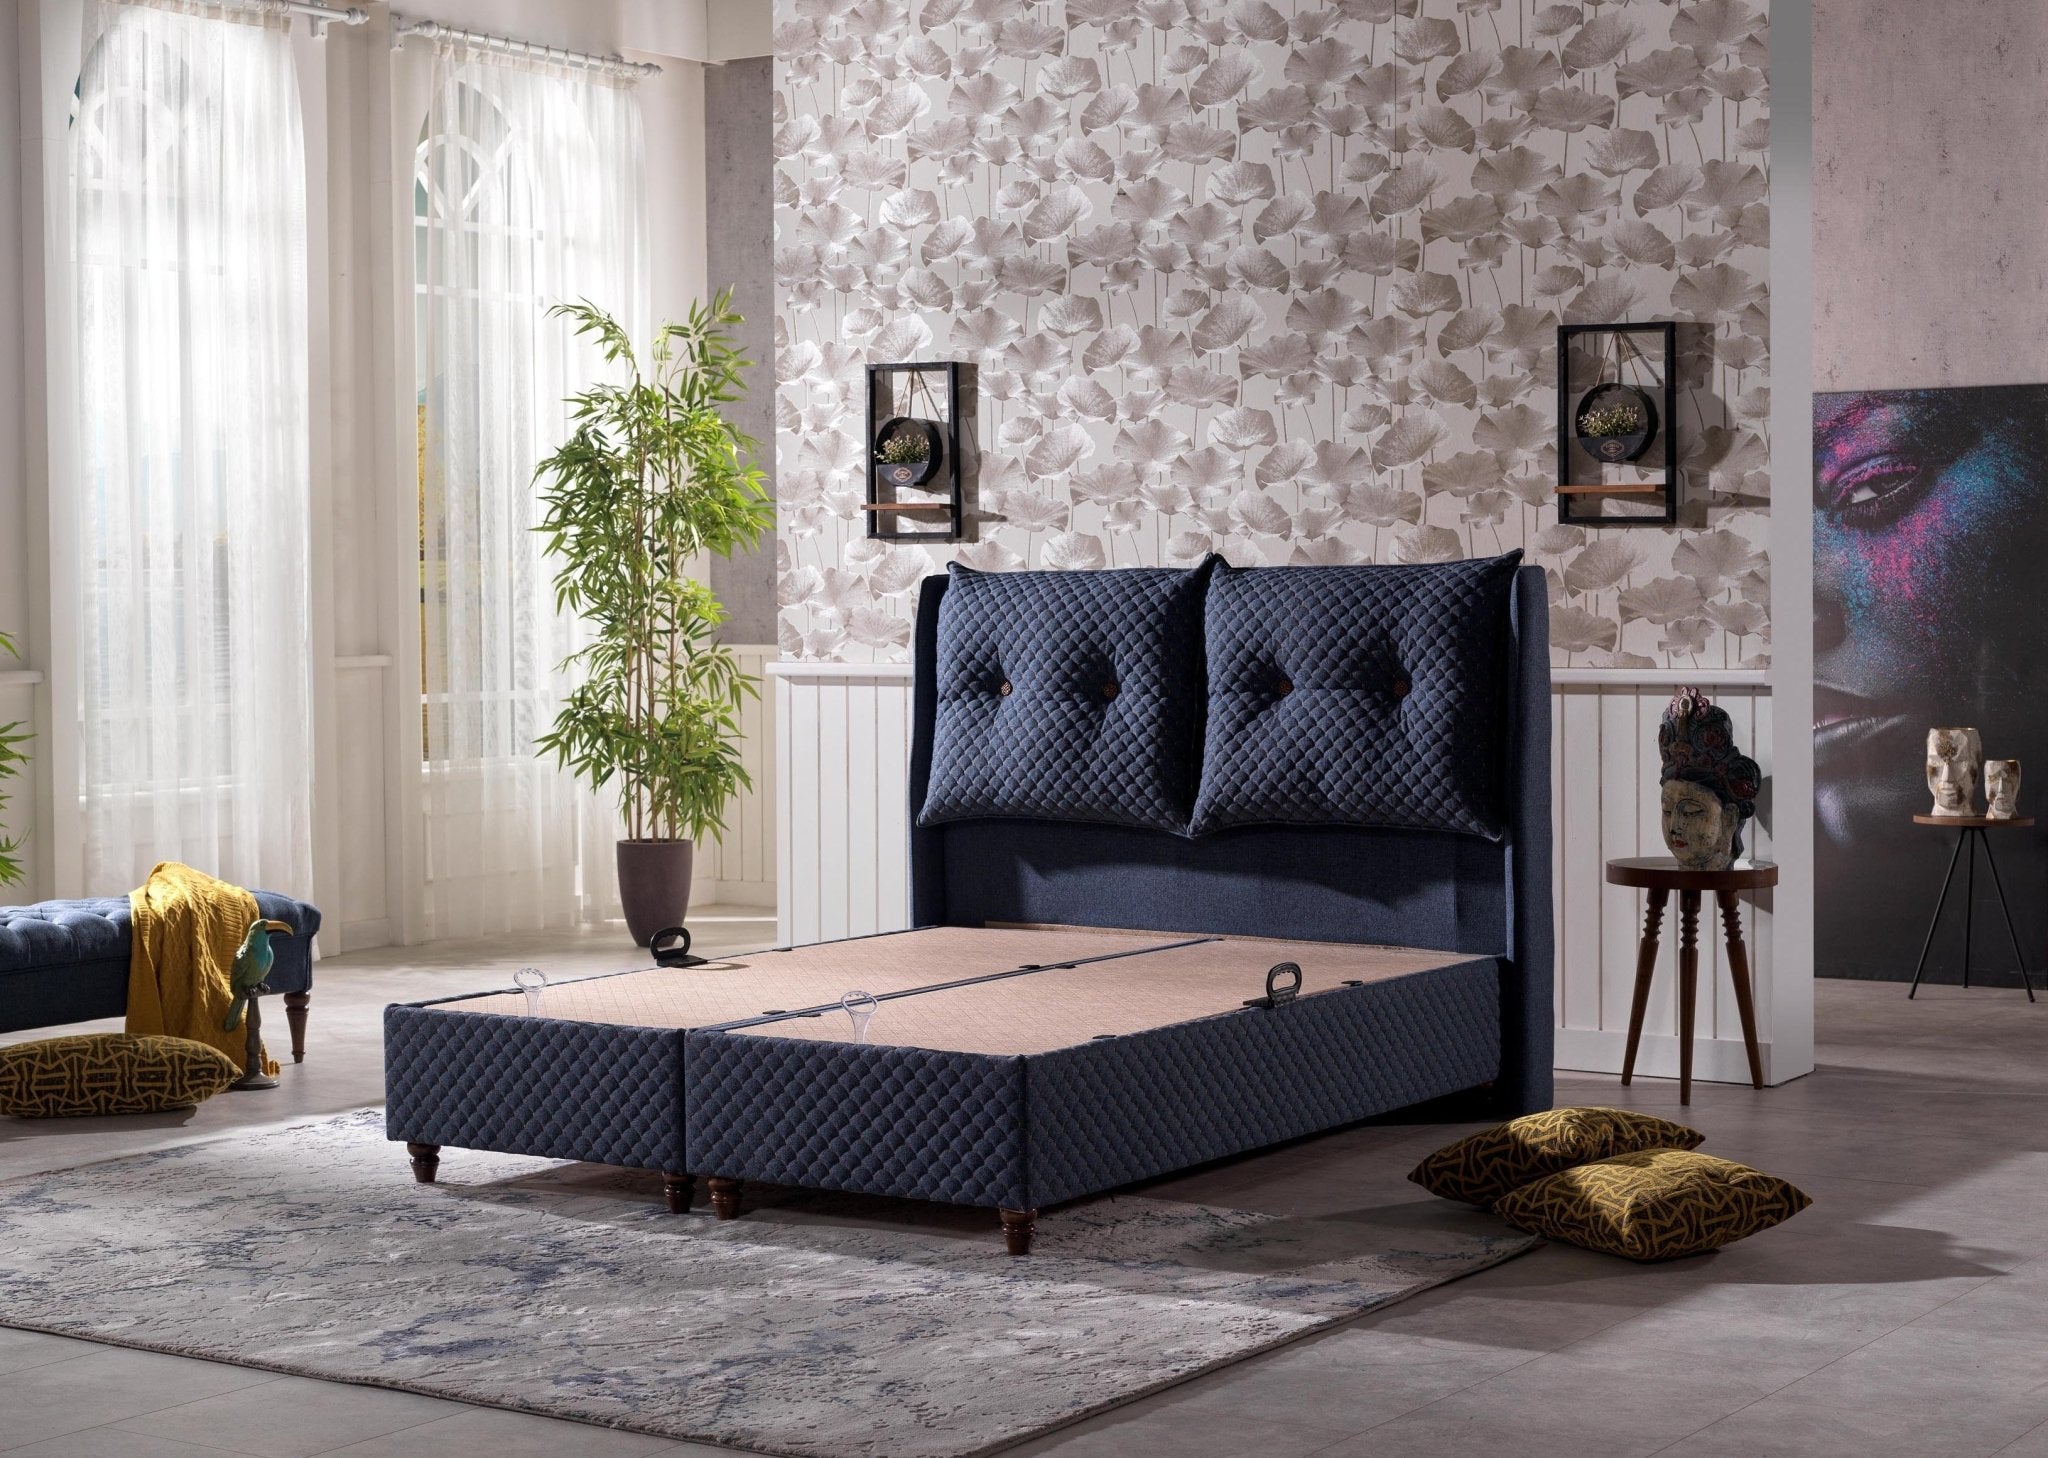 SUNRISE Bed - Berre Furniture